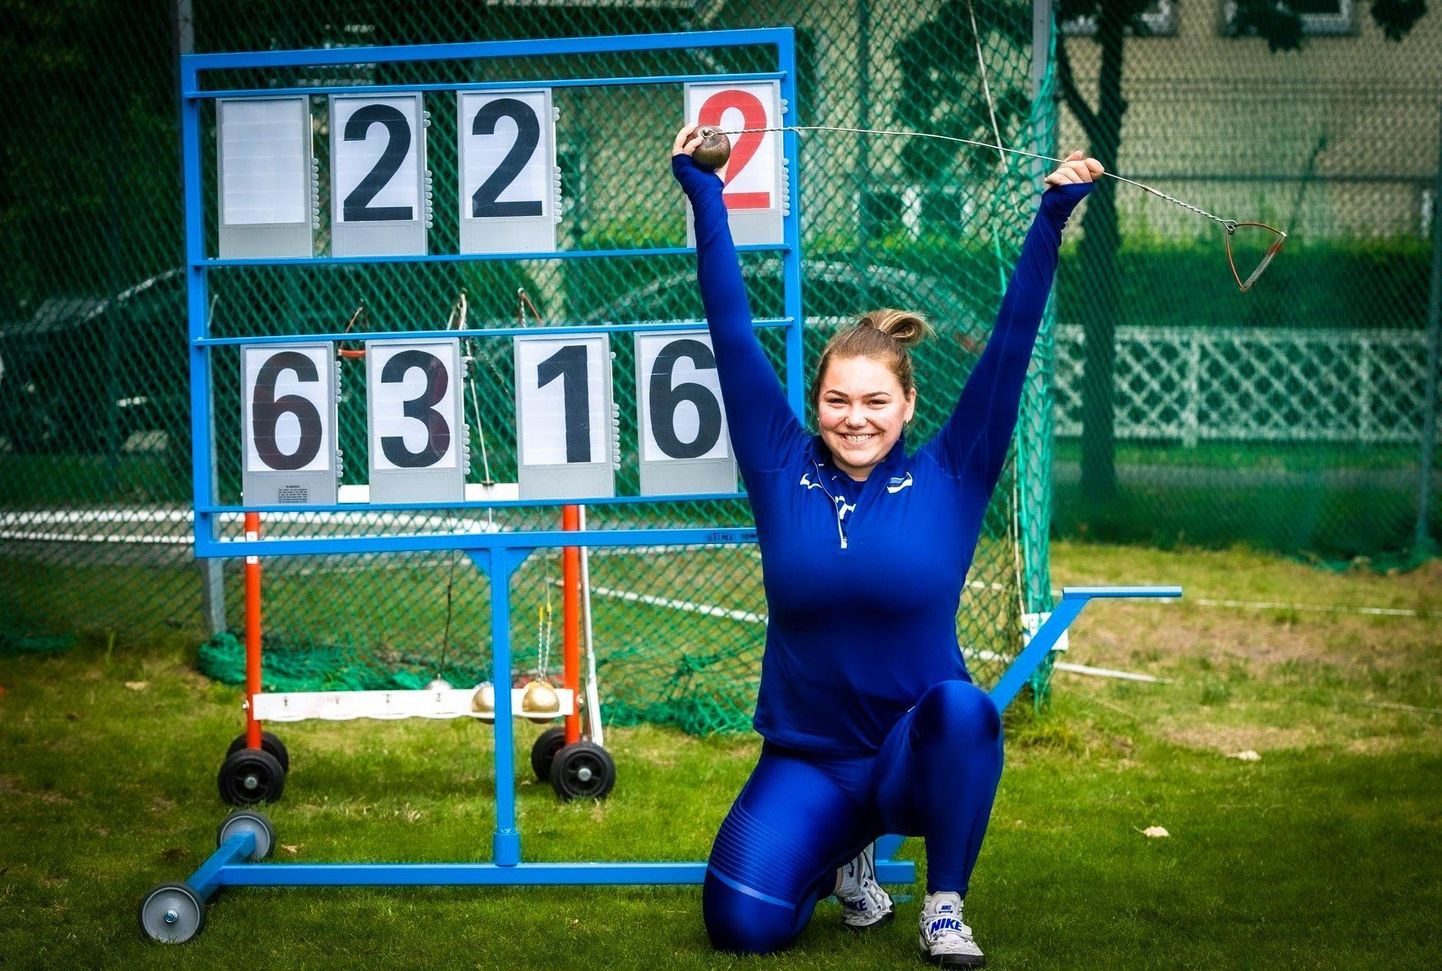 Möödunud nädalavahetusel Pärnus peetud võistkondlikel Balti meistrivõistlustel sai Kelly Heinpõld vasaraheites maha uue isikliku tippmargiga (63.16), mis algselt loeti Eesti uueks U18 vanuseklassi rekordiks. Hiljem tuli välja, et rekordiks seda pidada ei saa.